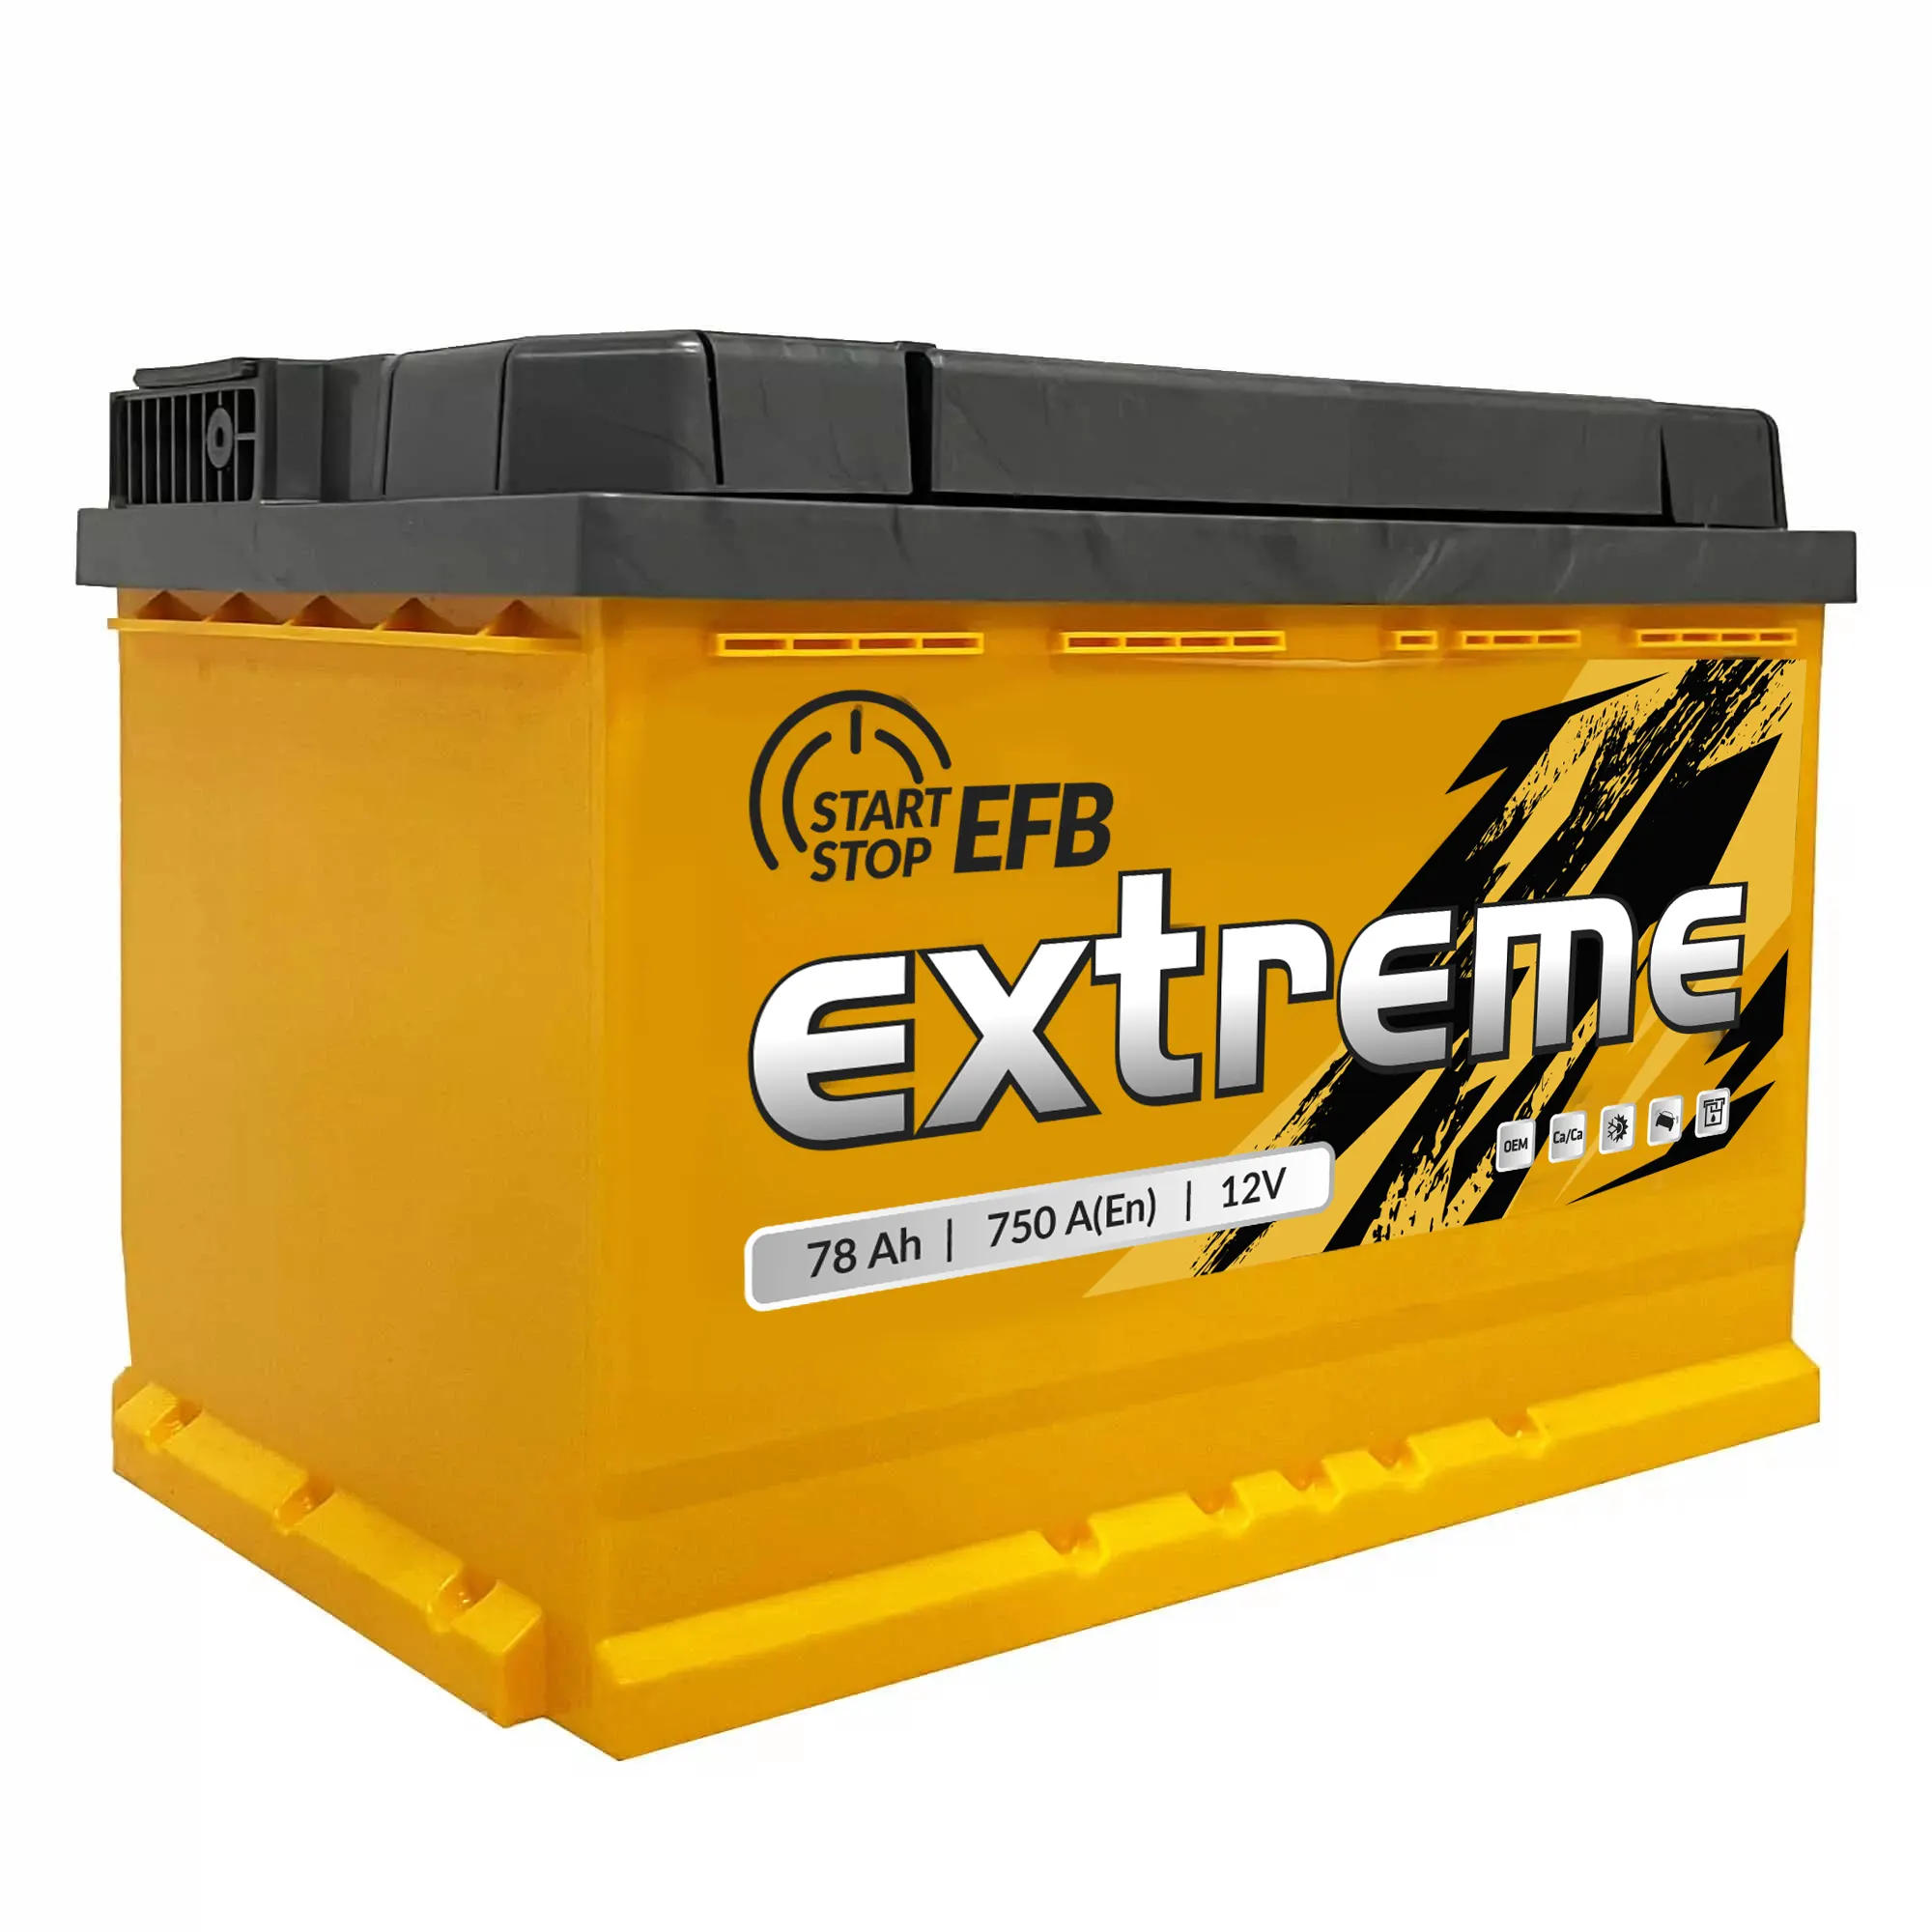 Аккумулятор Extreme 6CT-78Аh EFB АзЕ (EEFB780)